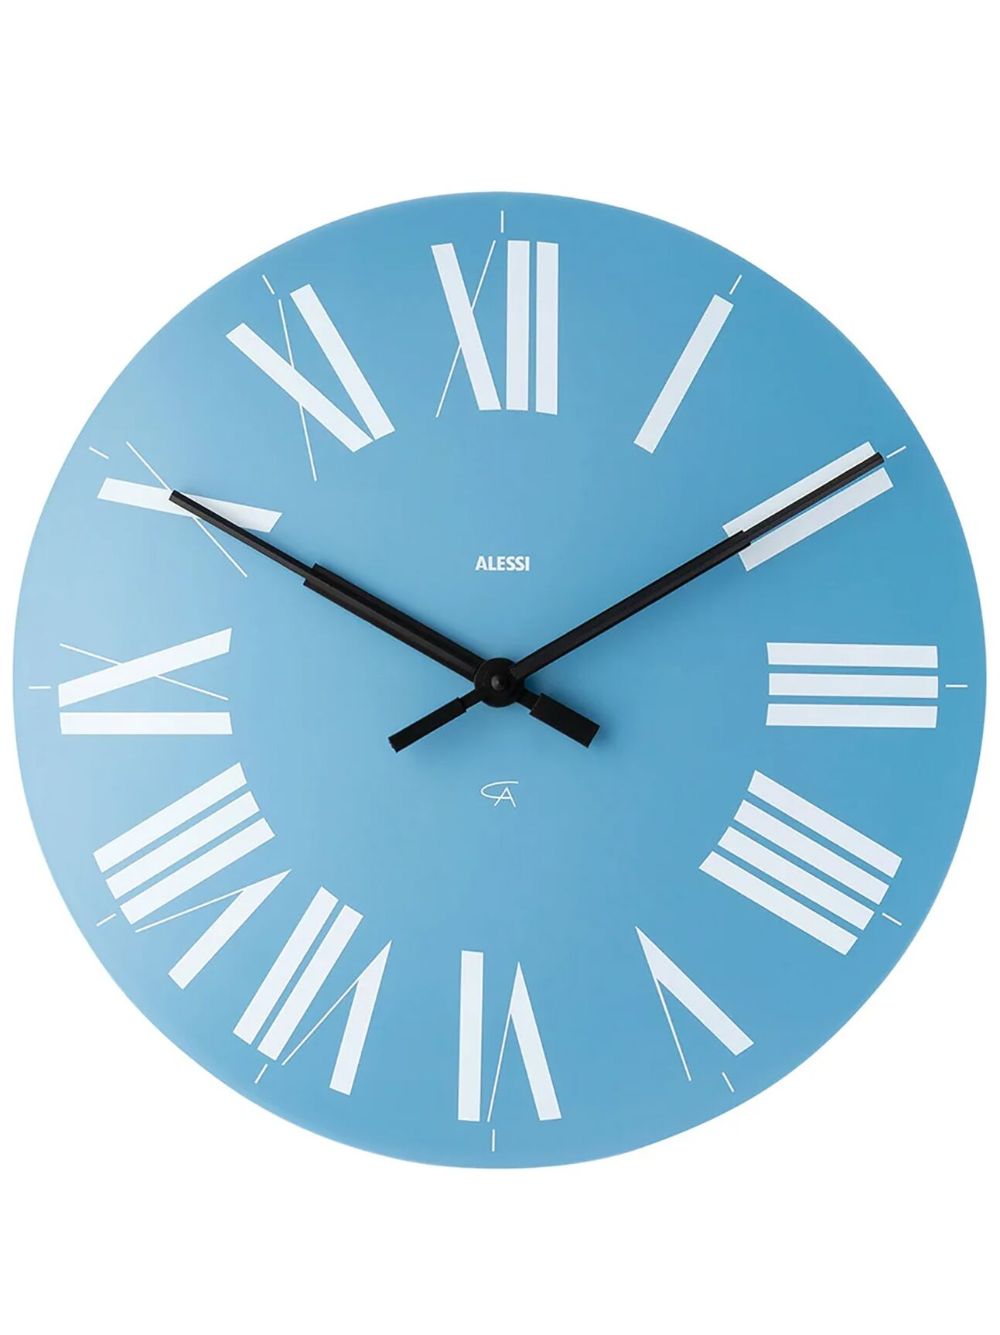 7 часов света. Часы that Light Blue. Alessi часы настенные крепеж. Contemporary Designers Clocks. Clock Blue Light купить.